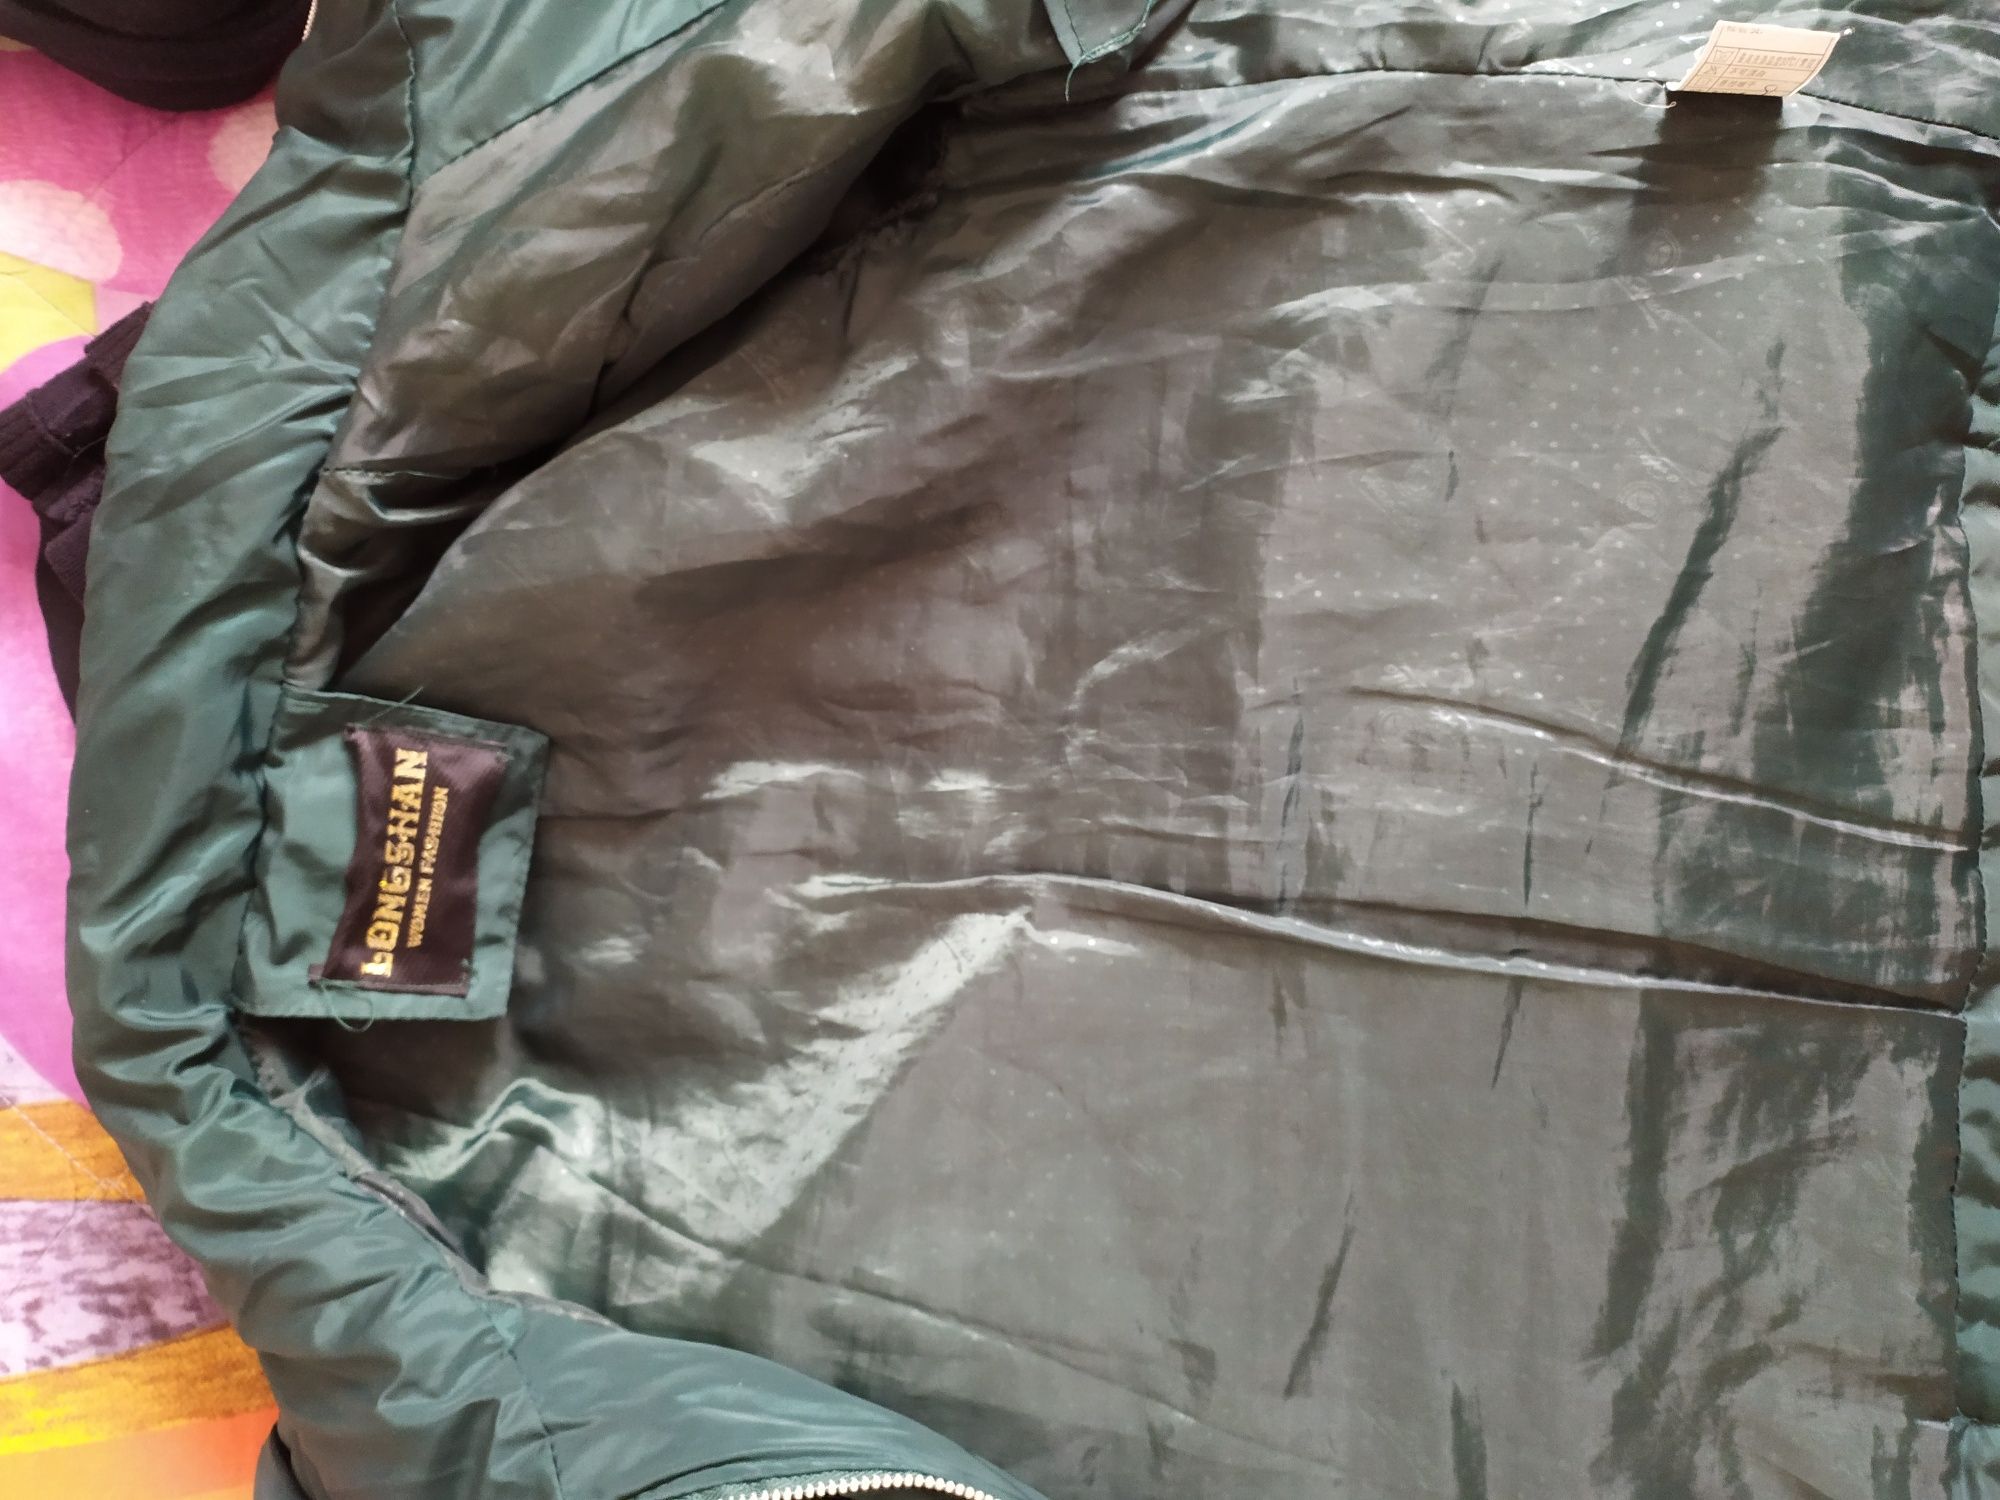 Куртка женская осенняя, в отличном состоянии, размер 40-42